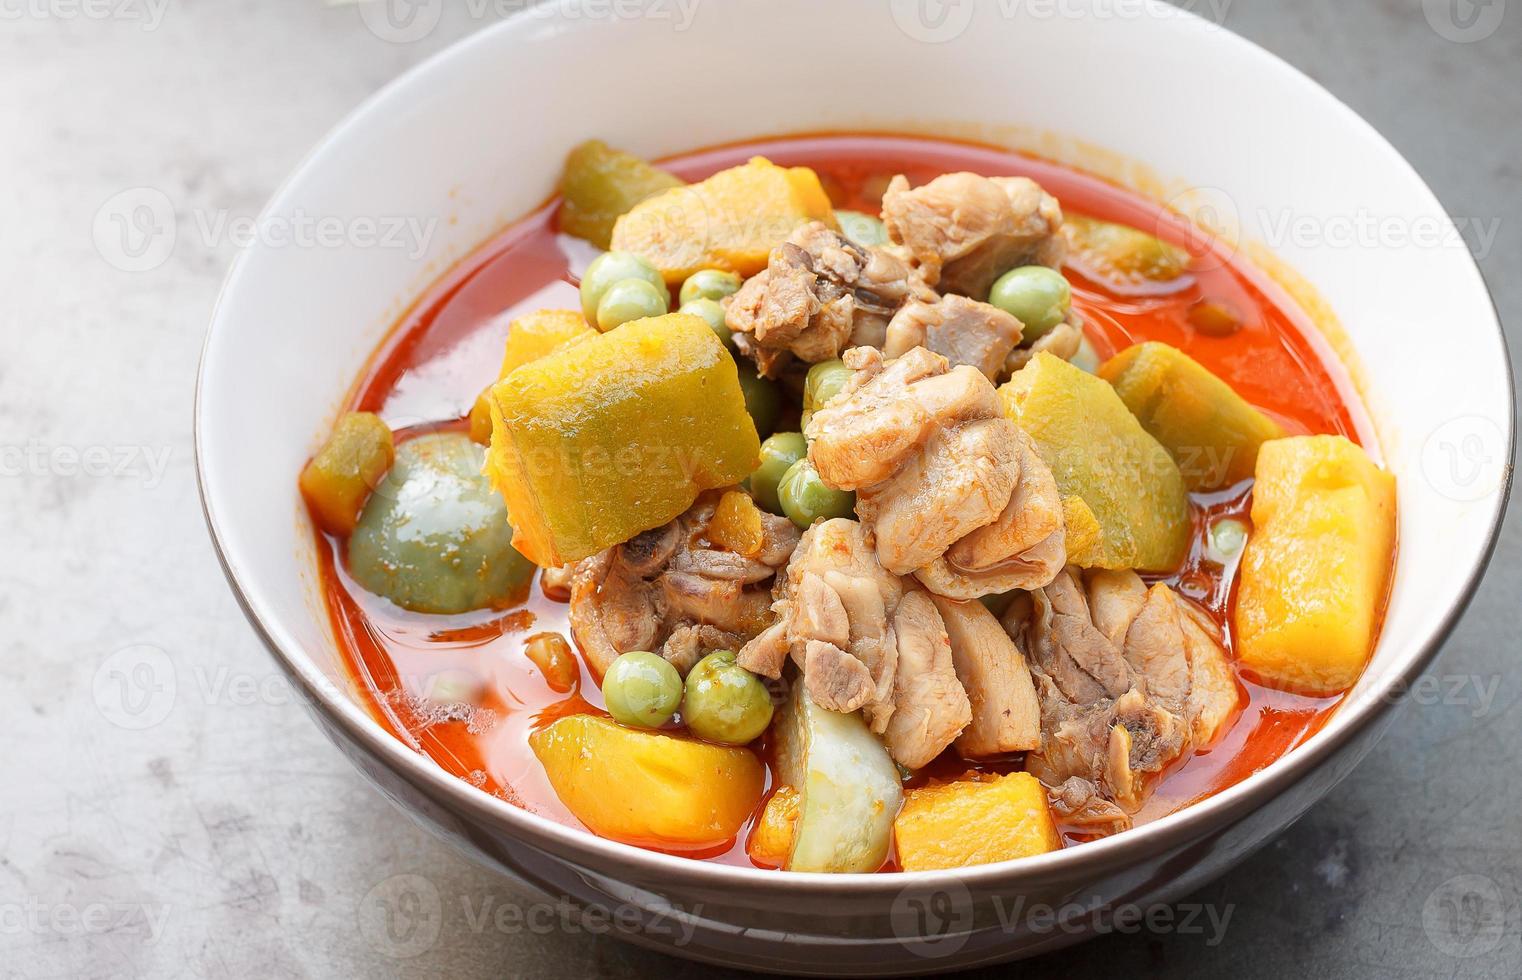 cuisine thaïlandaise - poulet au curry chaud avec citrouille photo